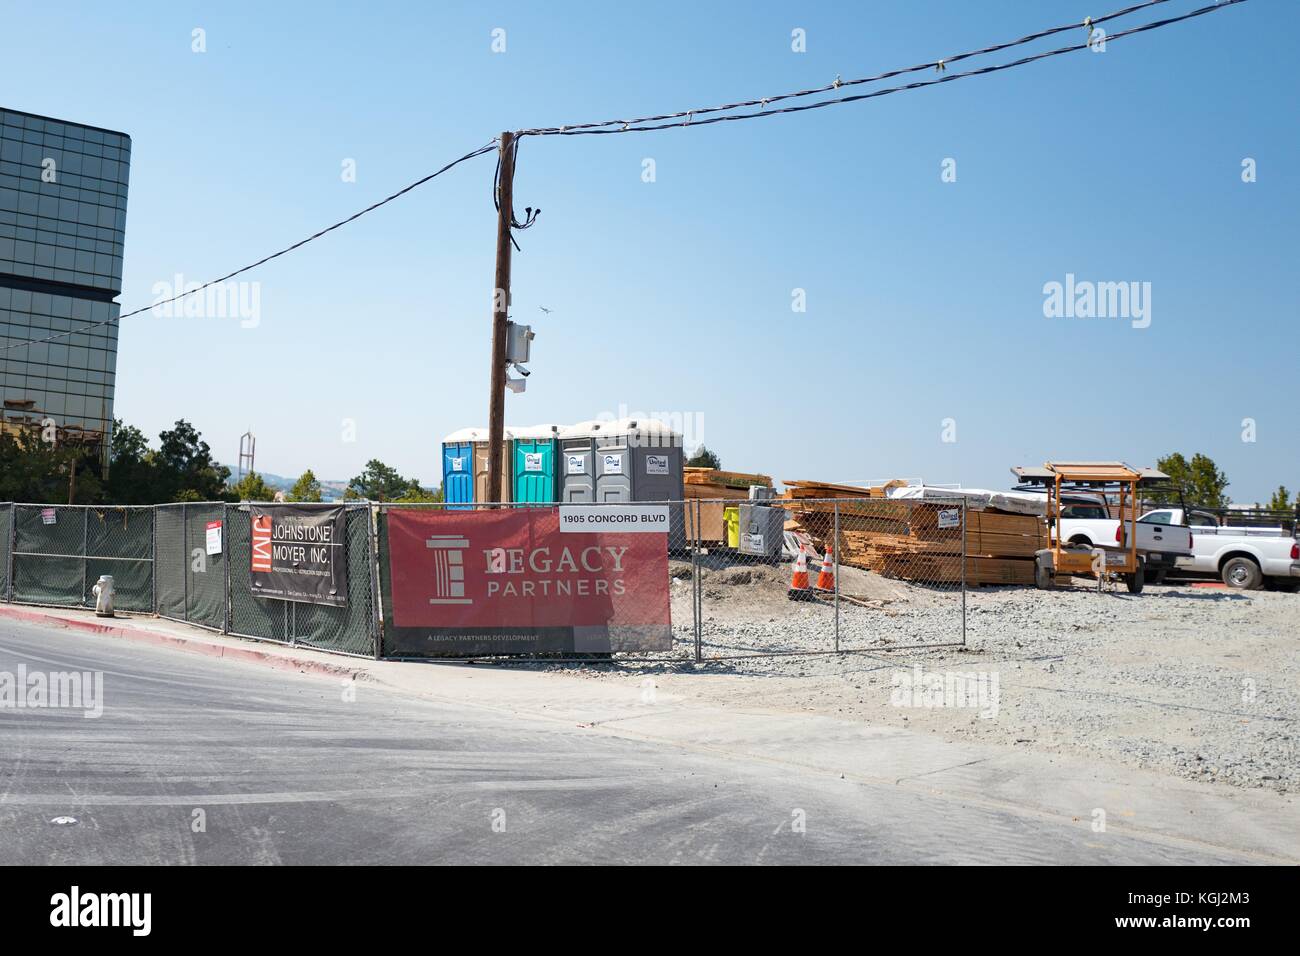 Sito in costruzione con segnaletica per i partner di legacy nel centro cittadino di concordia, California, 8 settembre 2017 Concord è considerato il più veloce tra le crescenti città nell'area della baia di San Francisco. Foto Stock